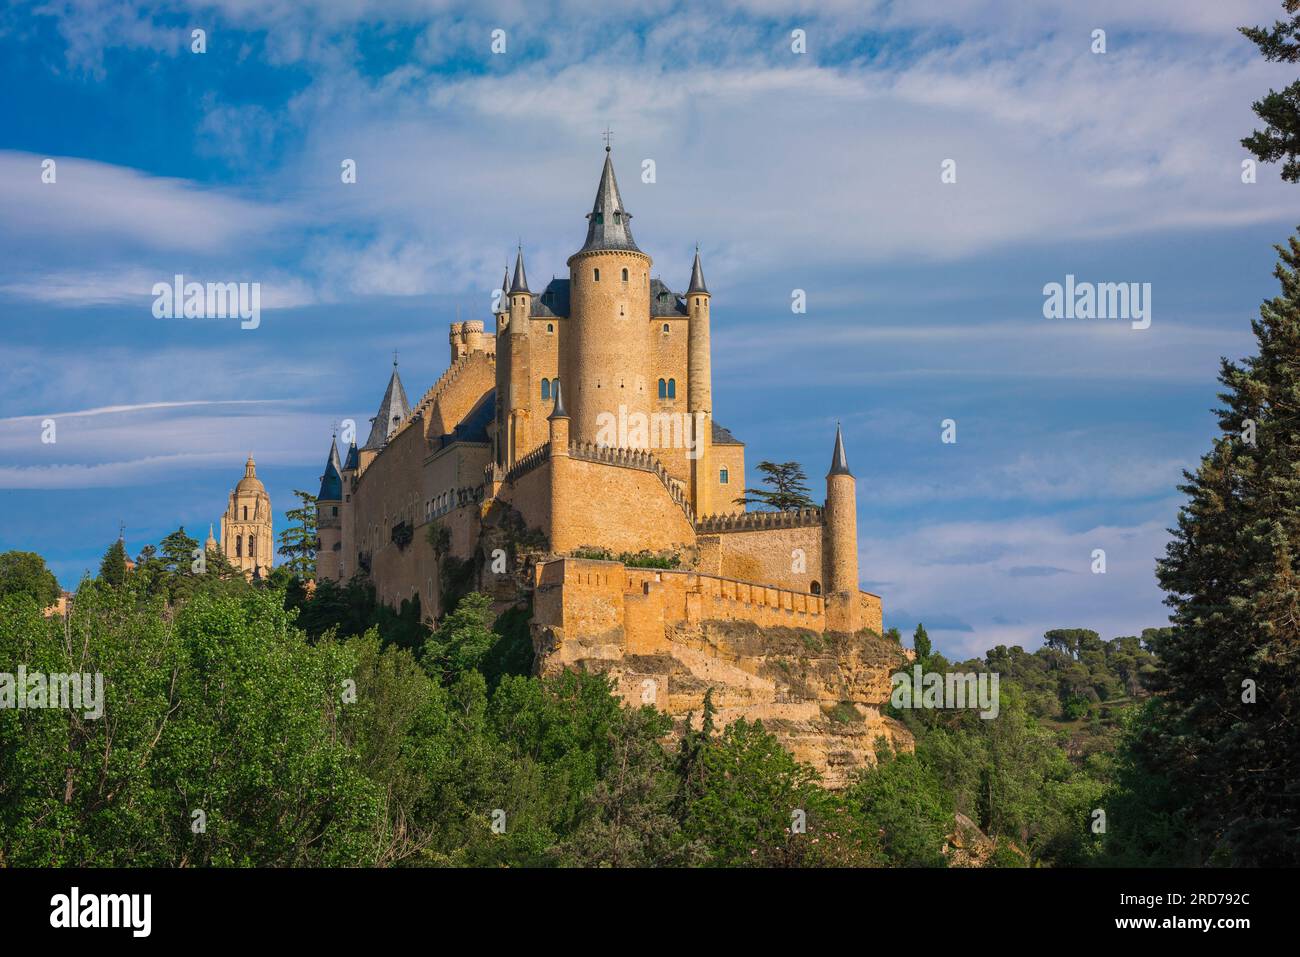 Alcazar Segovia, Blick auf den Alcazar de Segovia, ein spektakuläres Schloss aus dem 15. Jahrhundert, das sich am nordwestlichen Rand der Stadt Segovia, Spanien, befindet Stockfoto